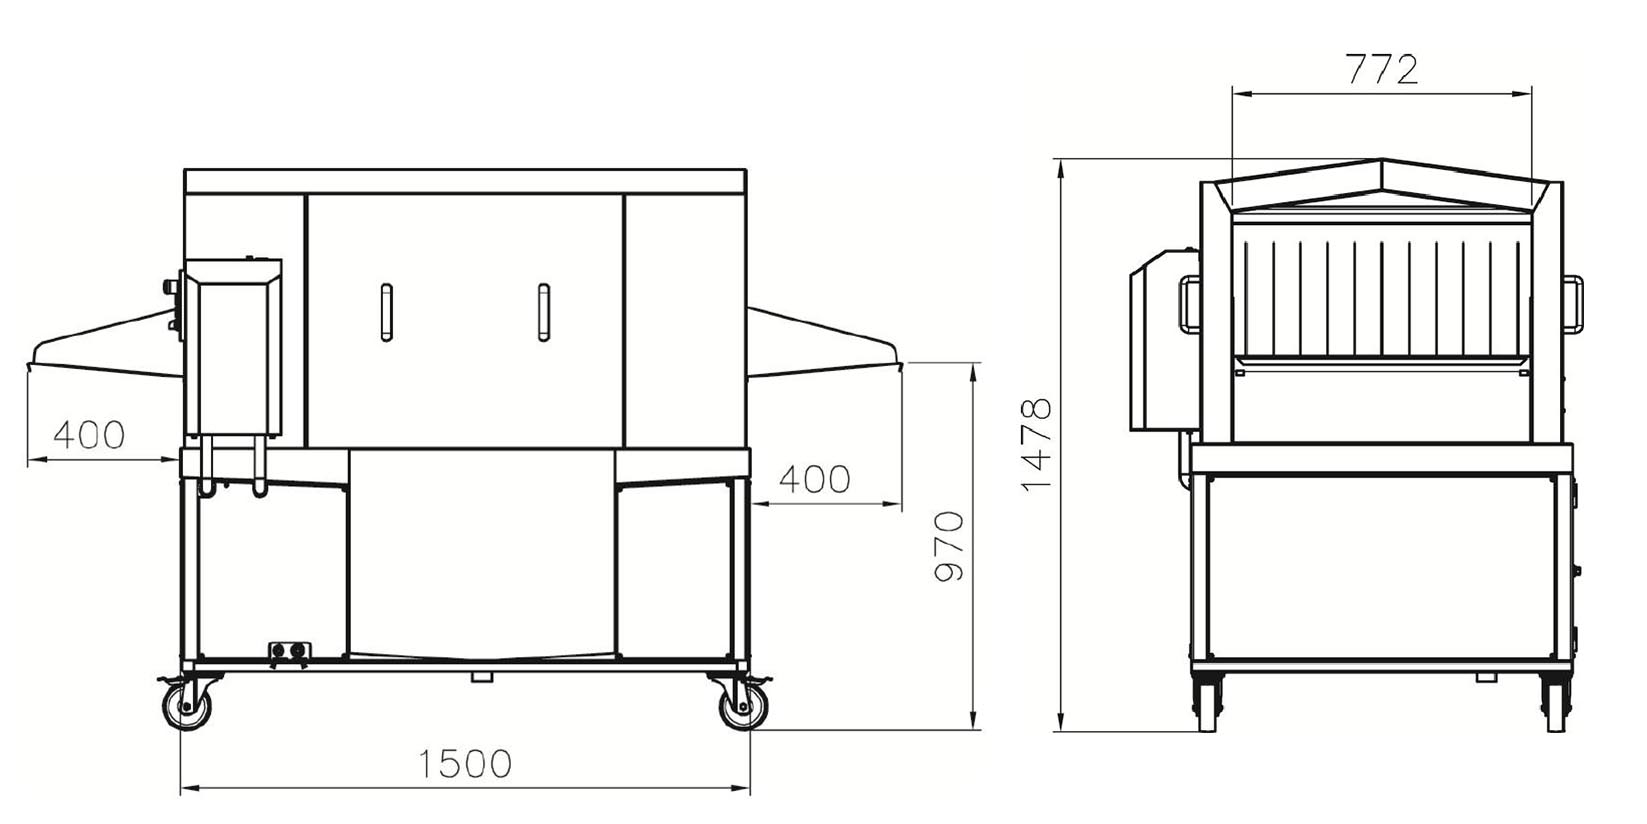 トレー洗浄装置の寸法図